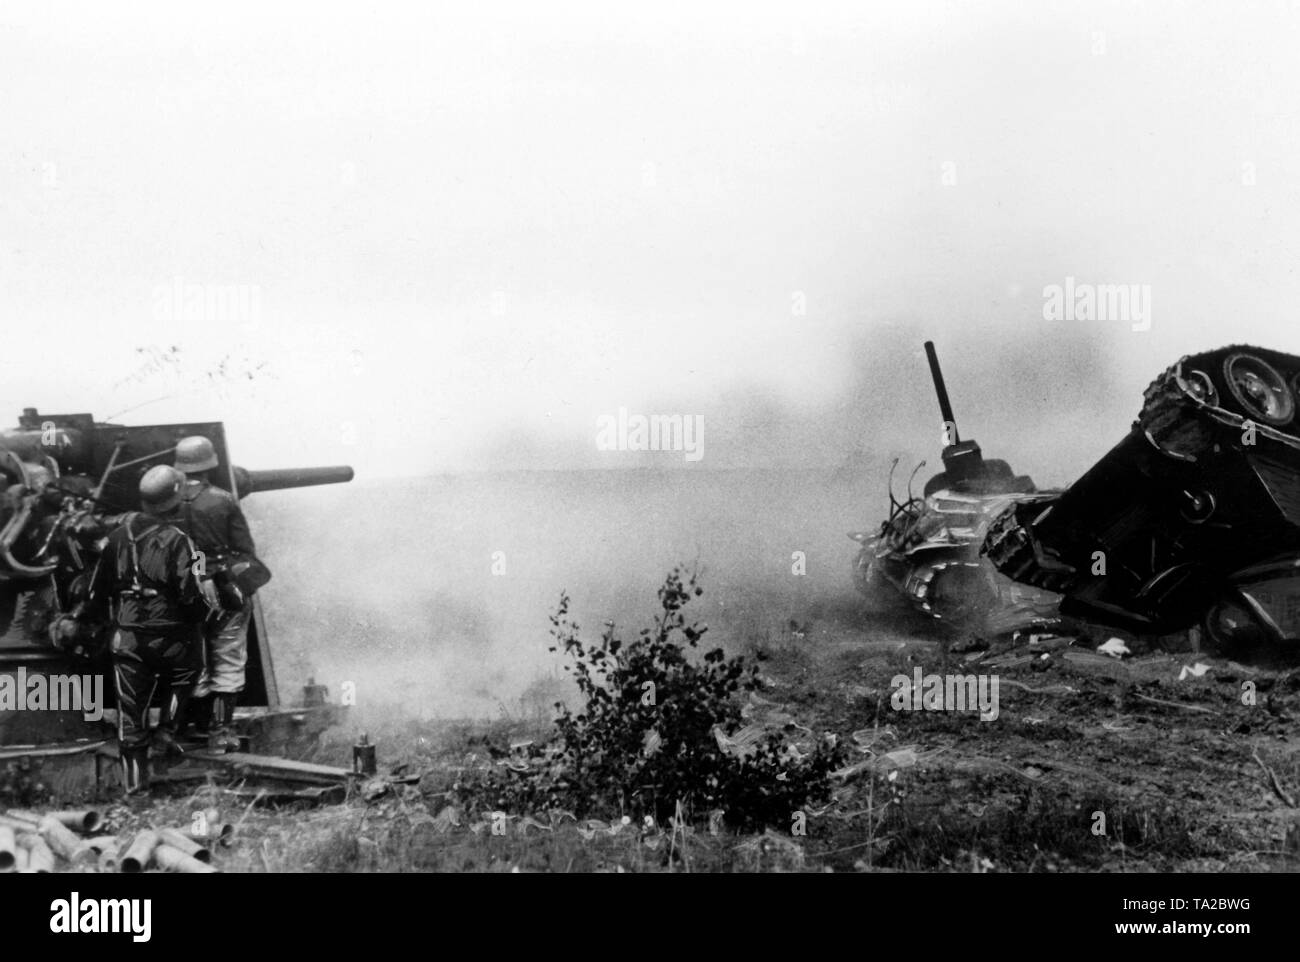 Deutsche Soldaten verwendet einen 88-mm-Kanone (88) gegen Panzer nördlich der Stadt Orjol. Bild vom akkreditierten corrospondent Lachmann (Propaganda). Stockfoto